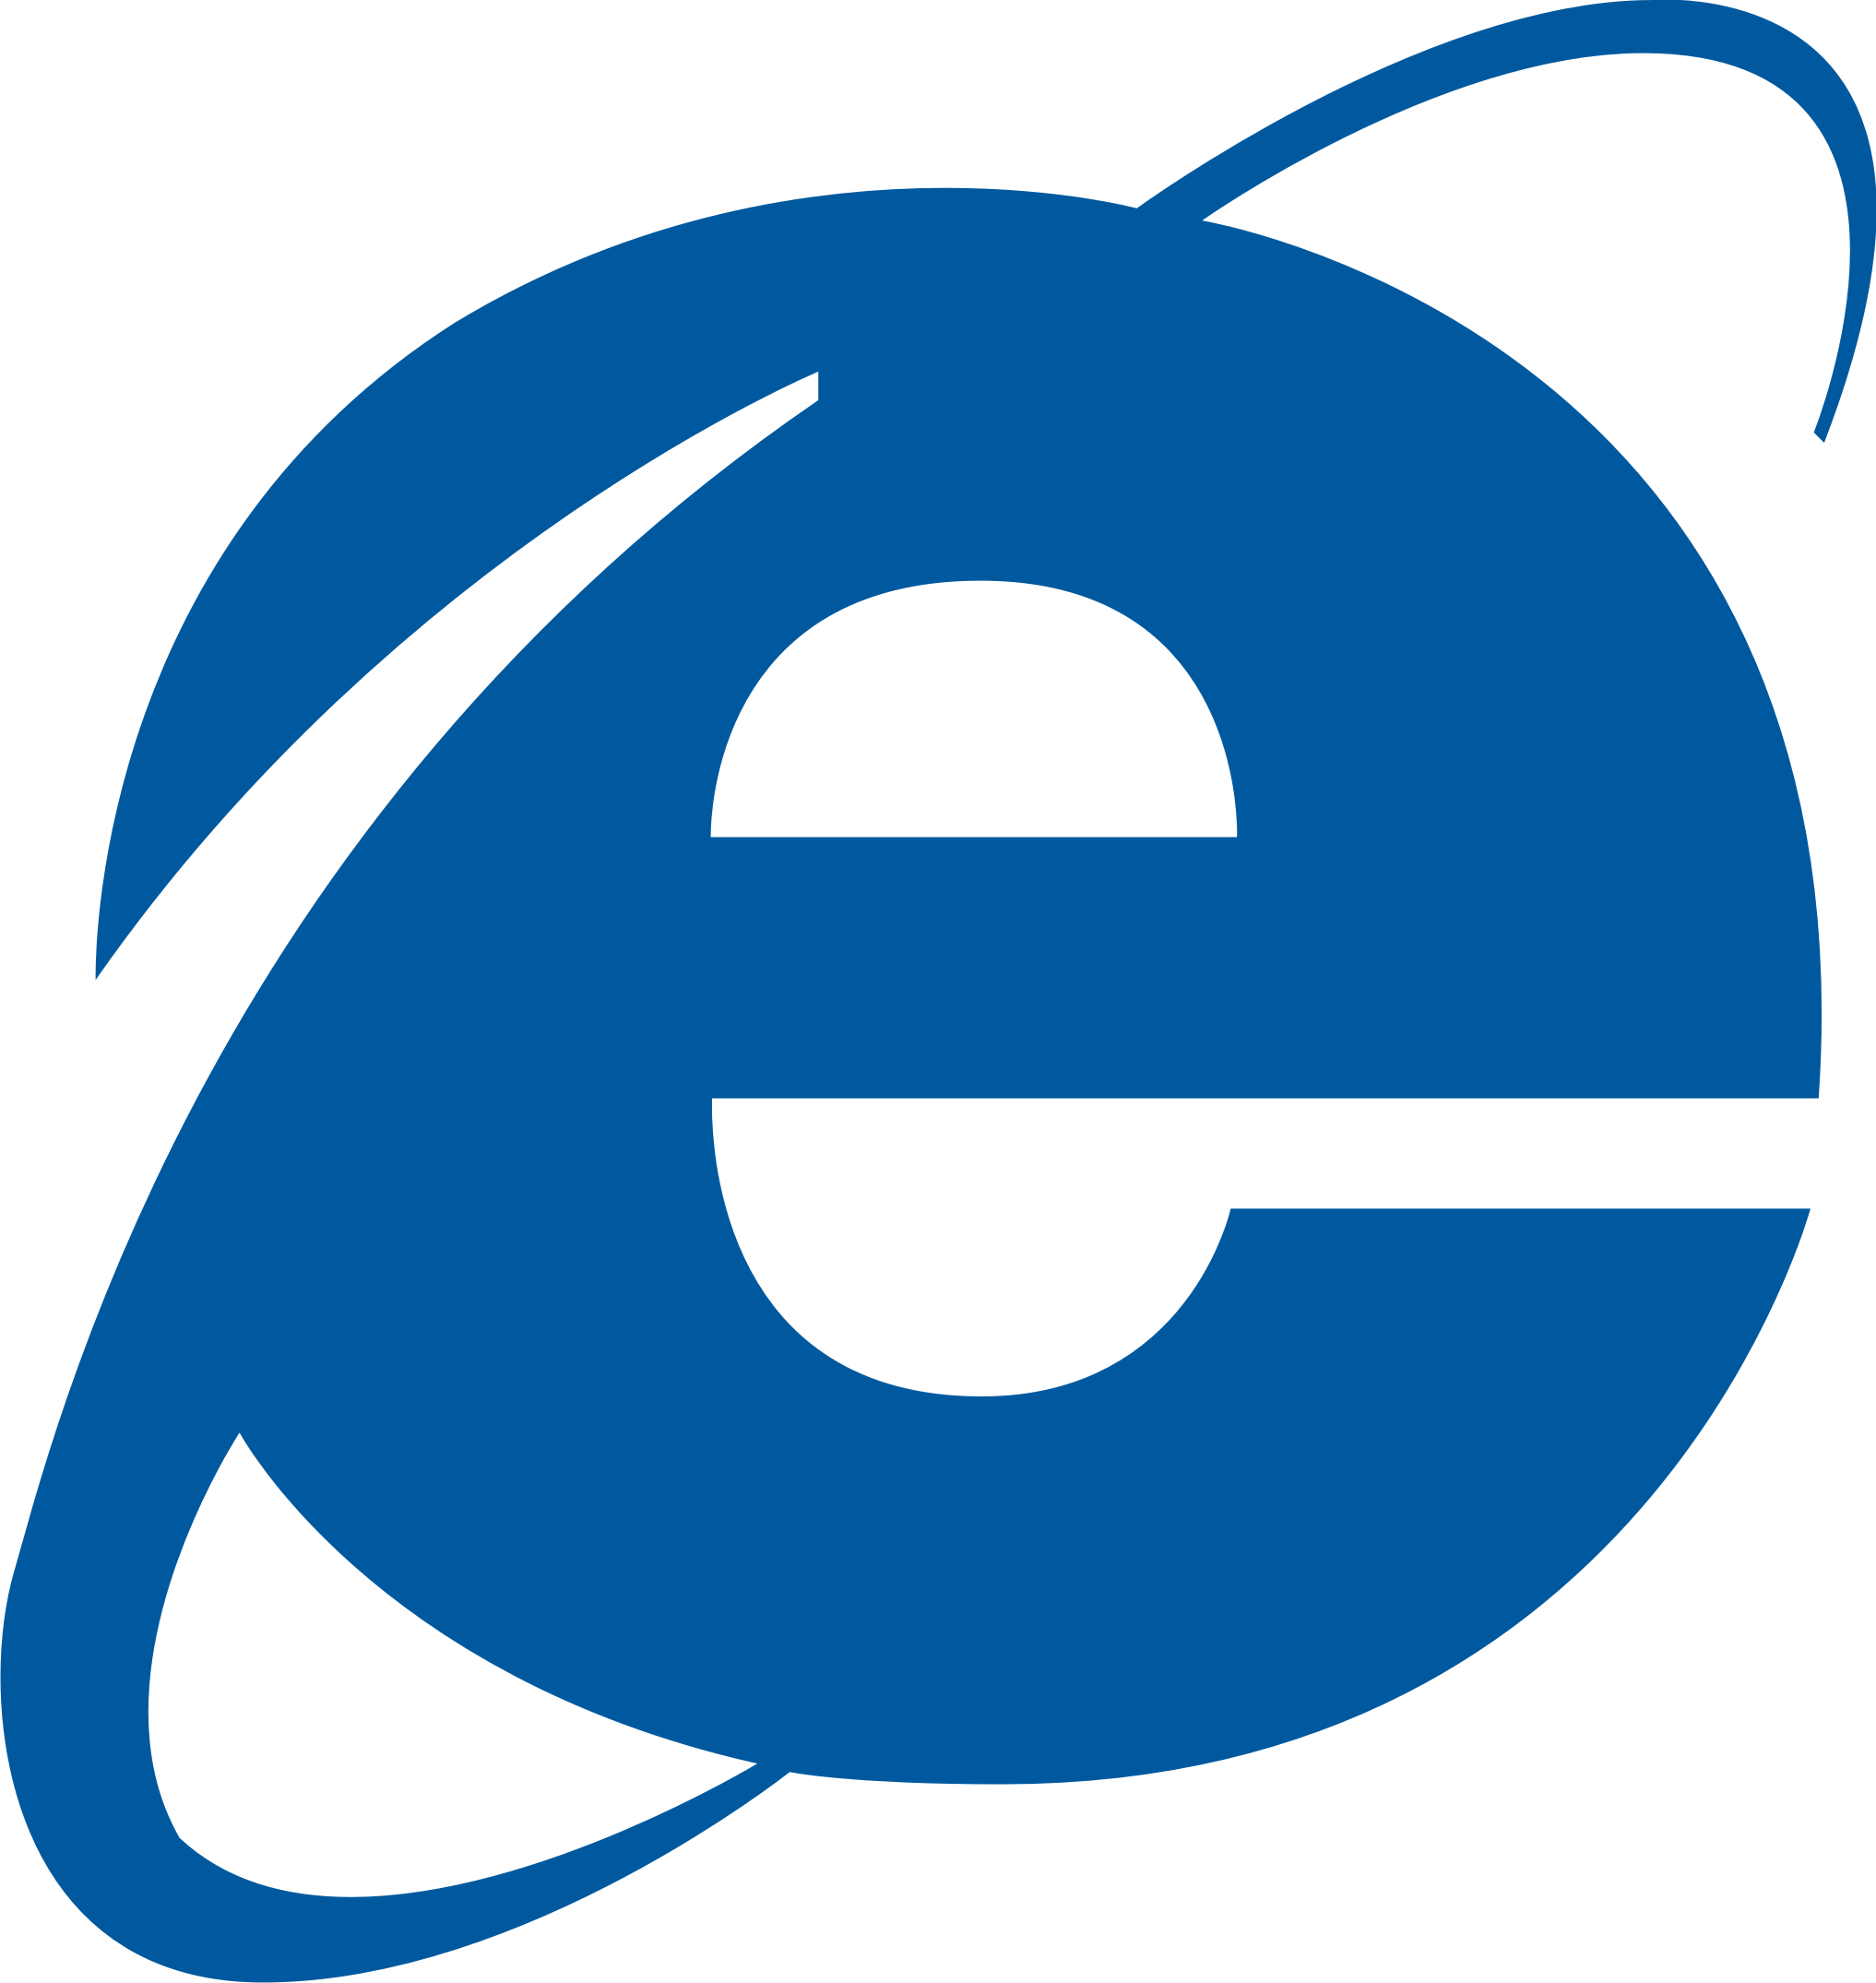 Internet Explorer logo PNG images free download.